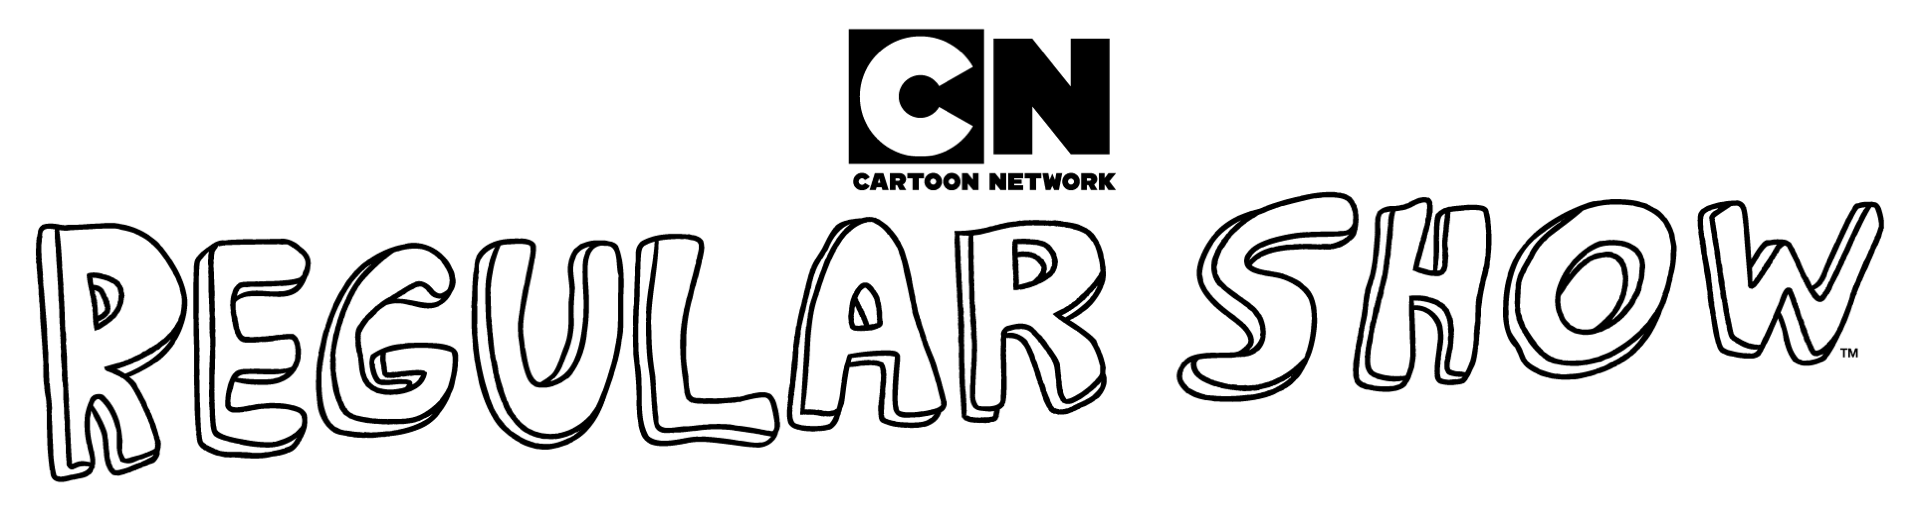 Cartoon Network Games: Regular Show 